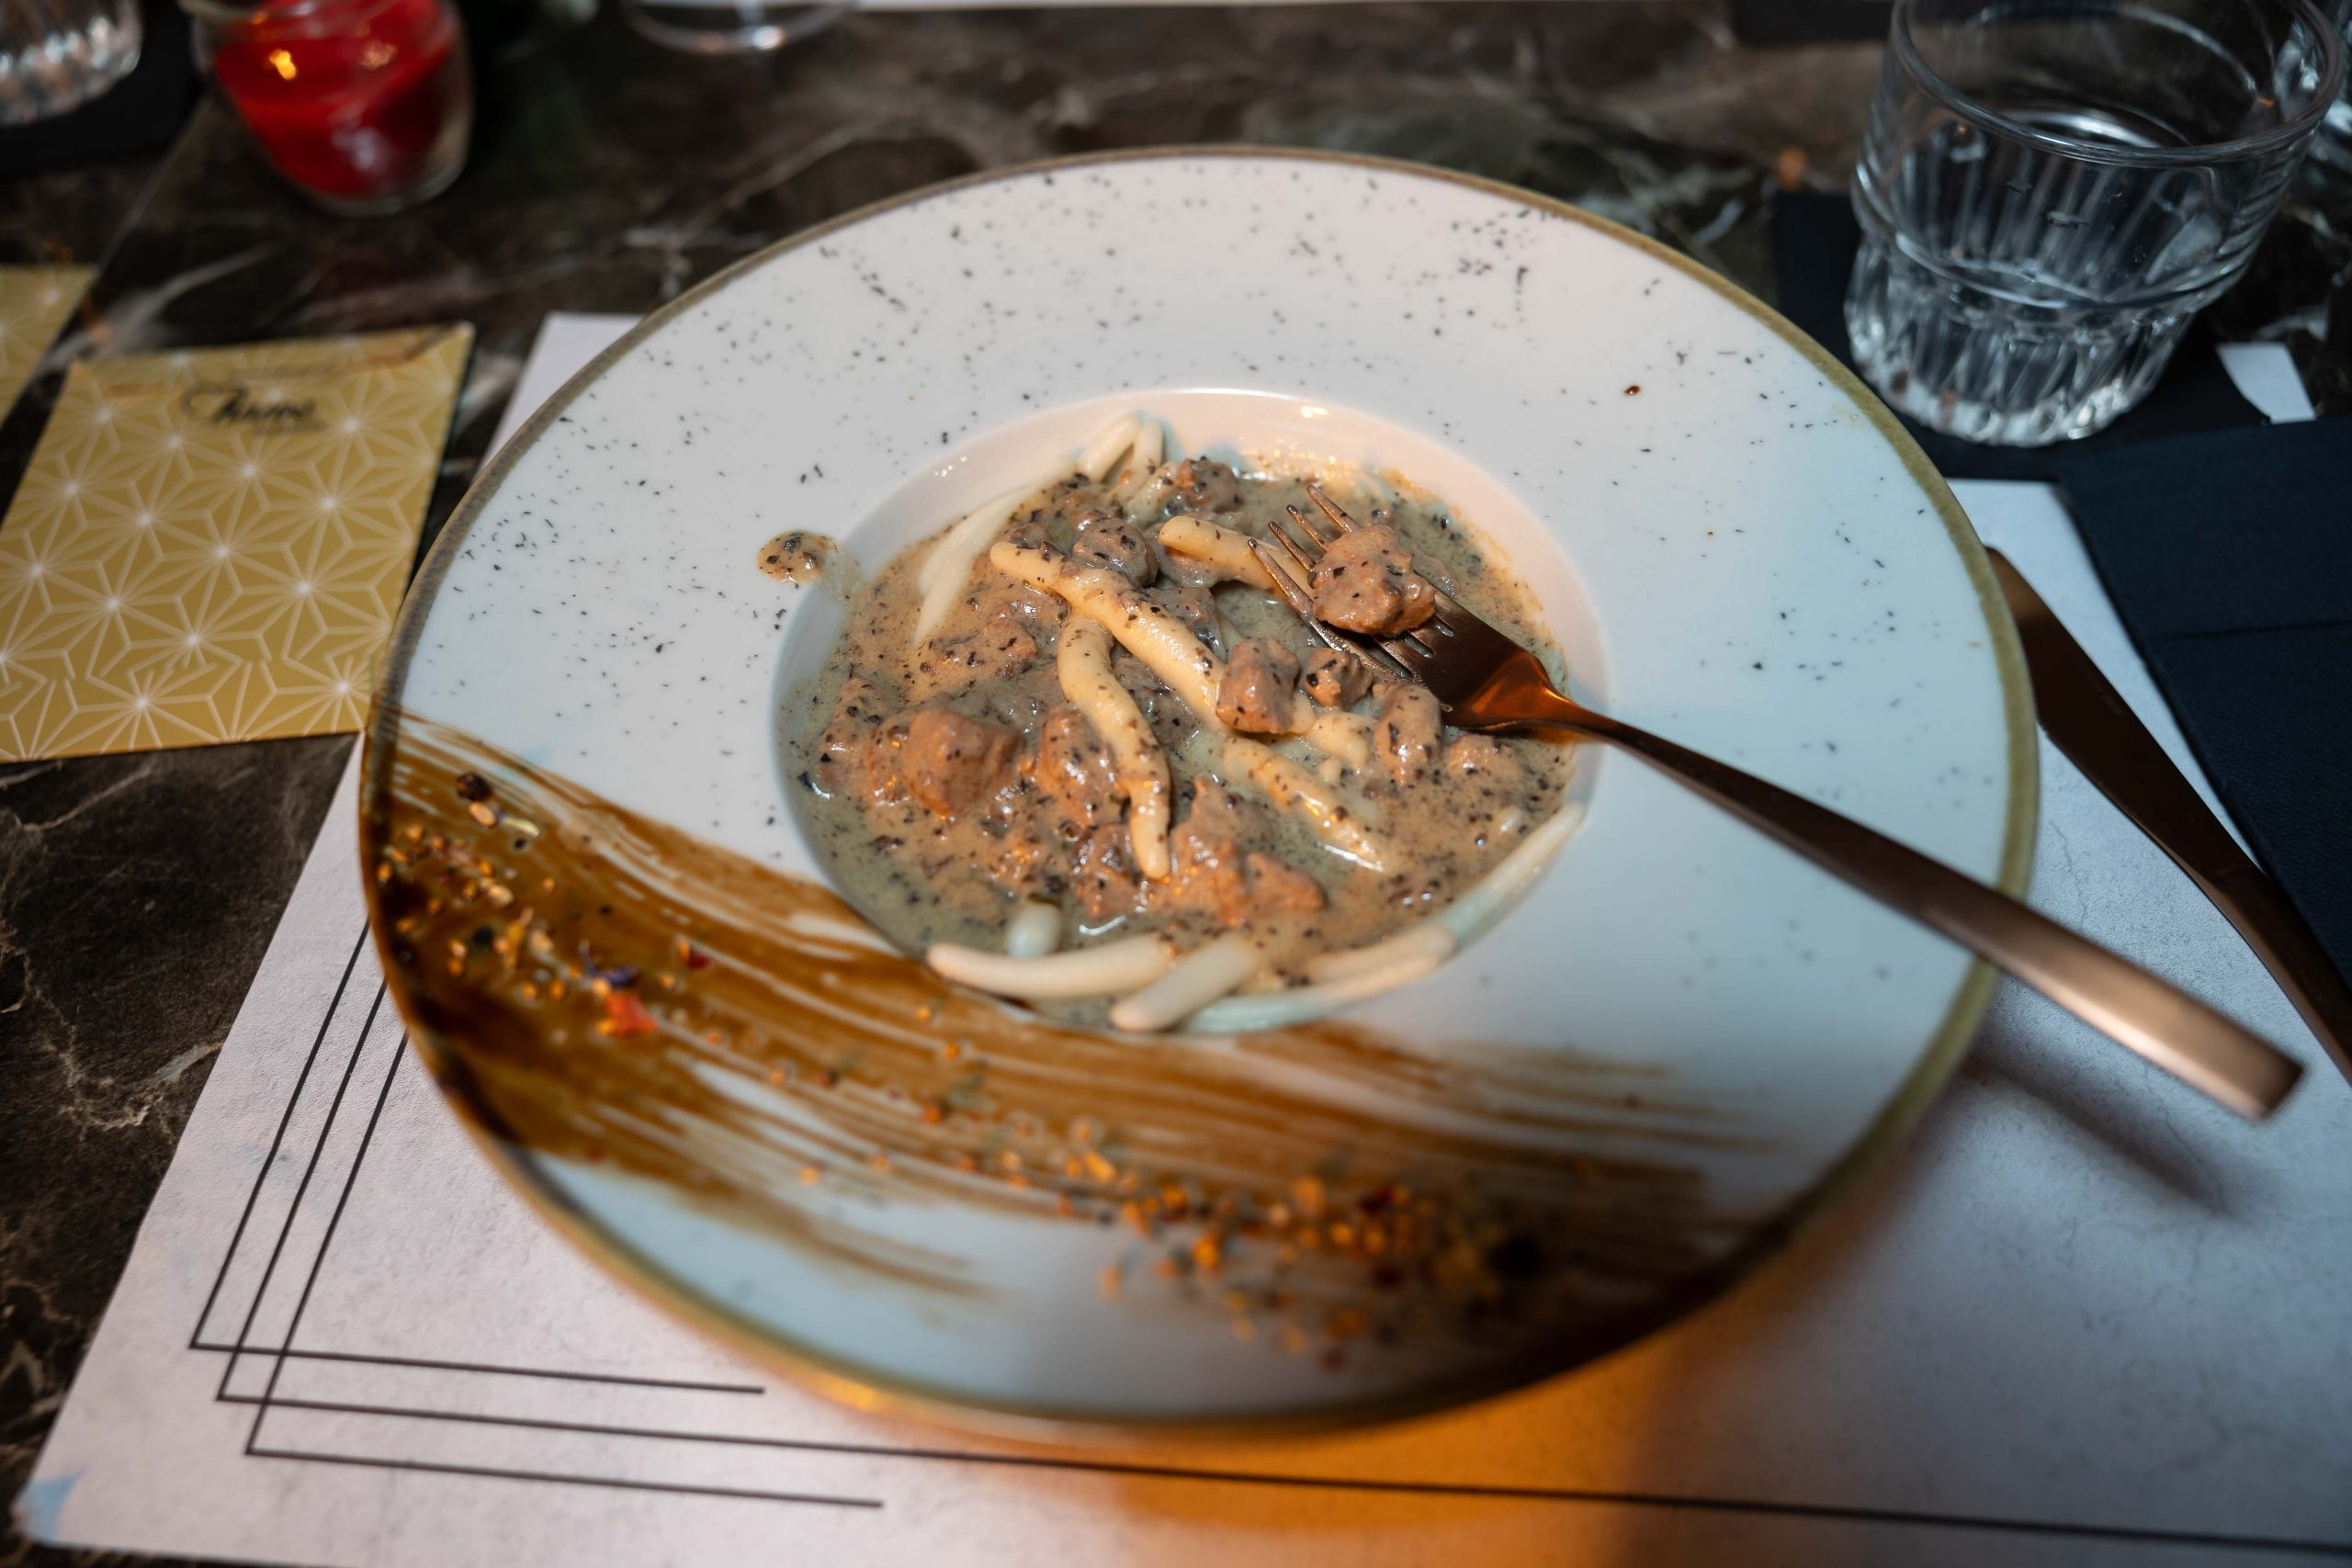 "Dinner in red" - fantastična tematska gastro večer u riječkoj Azuri